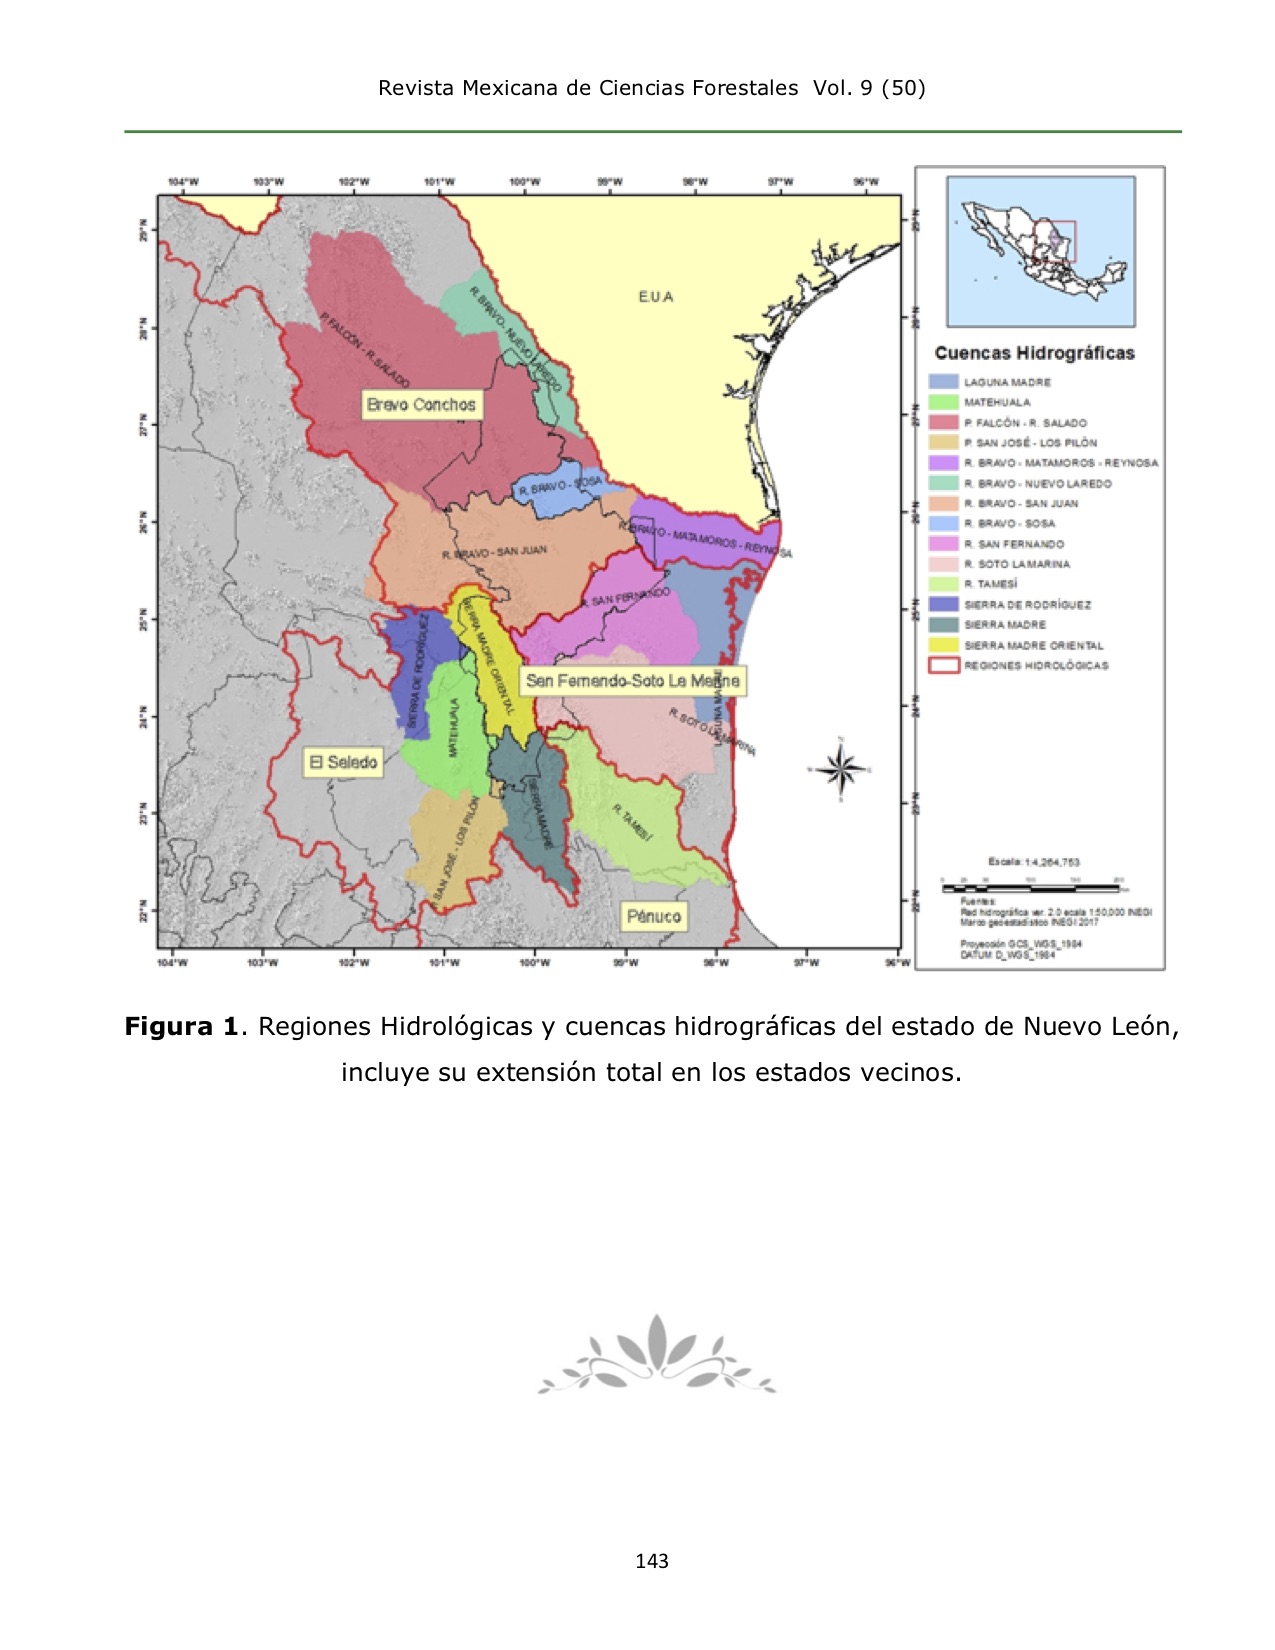 Evaluación del grado de conservación de las cuencas hidrográficas de Nuevo León, México